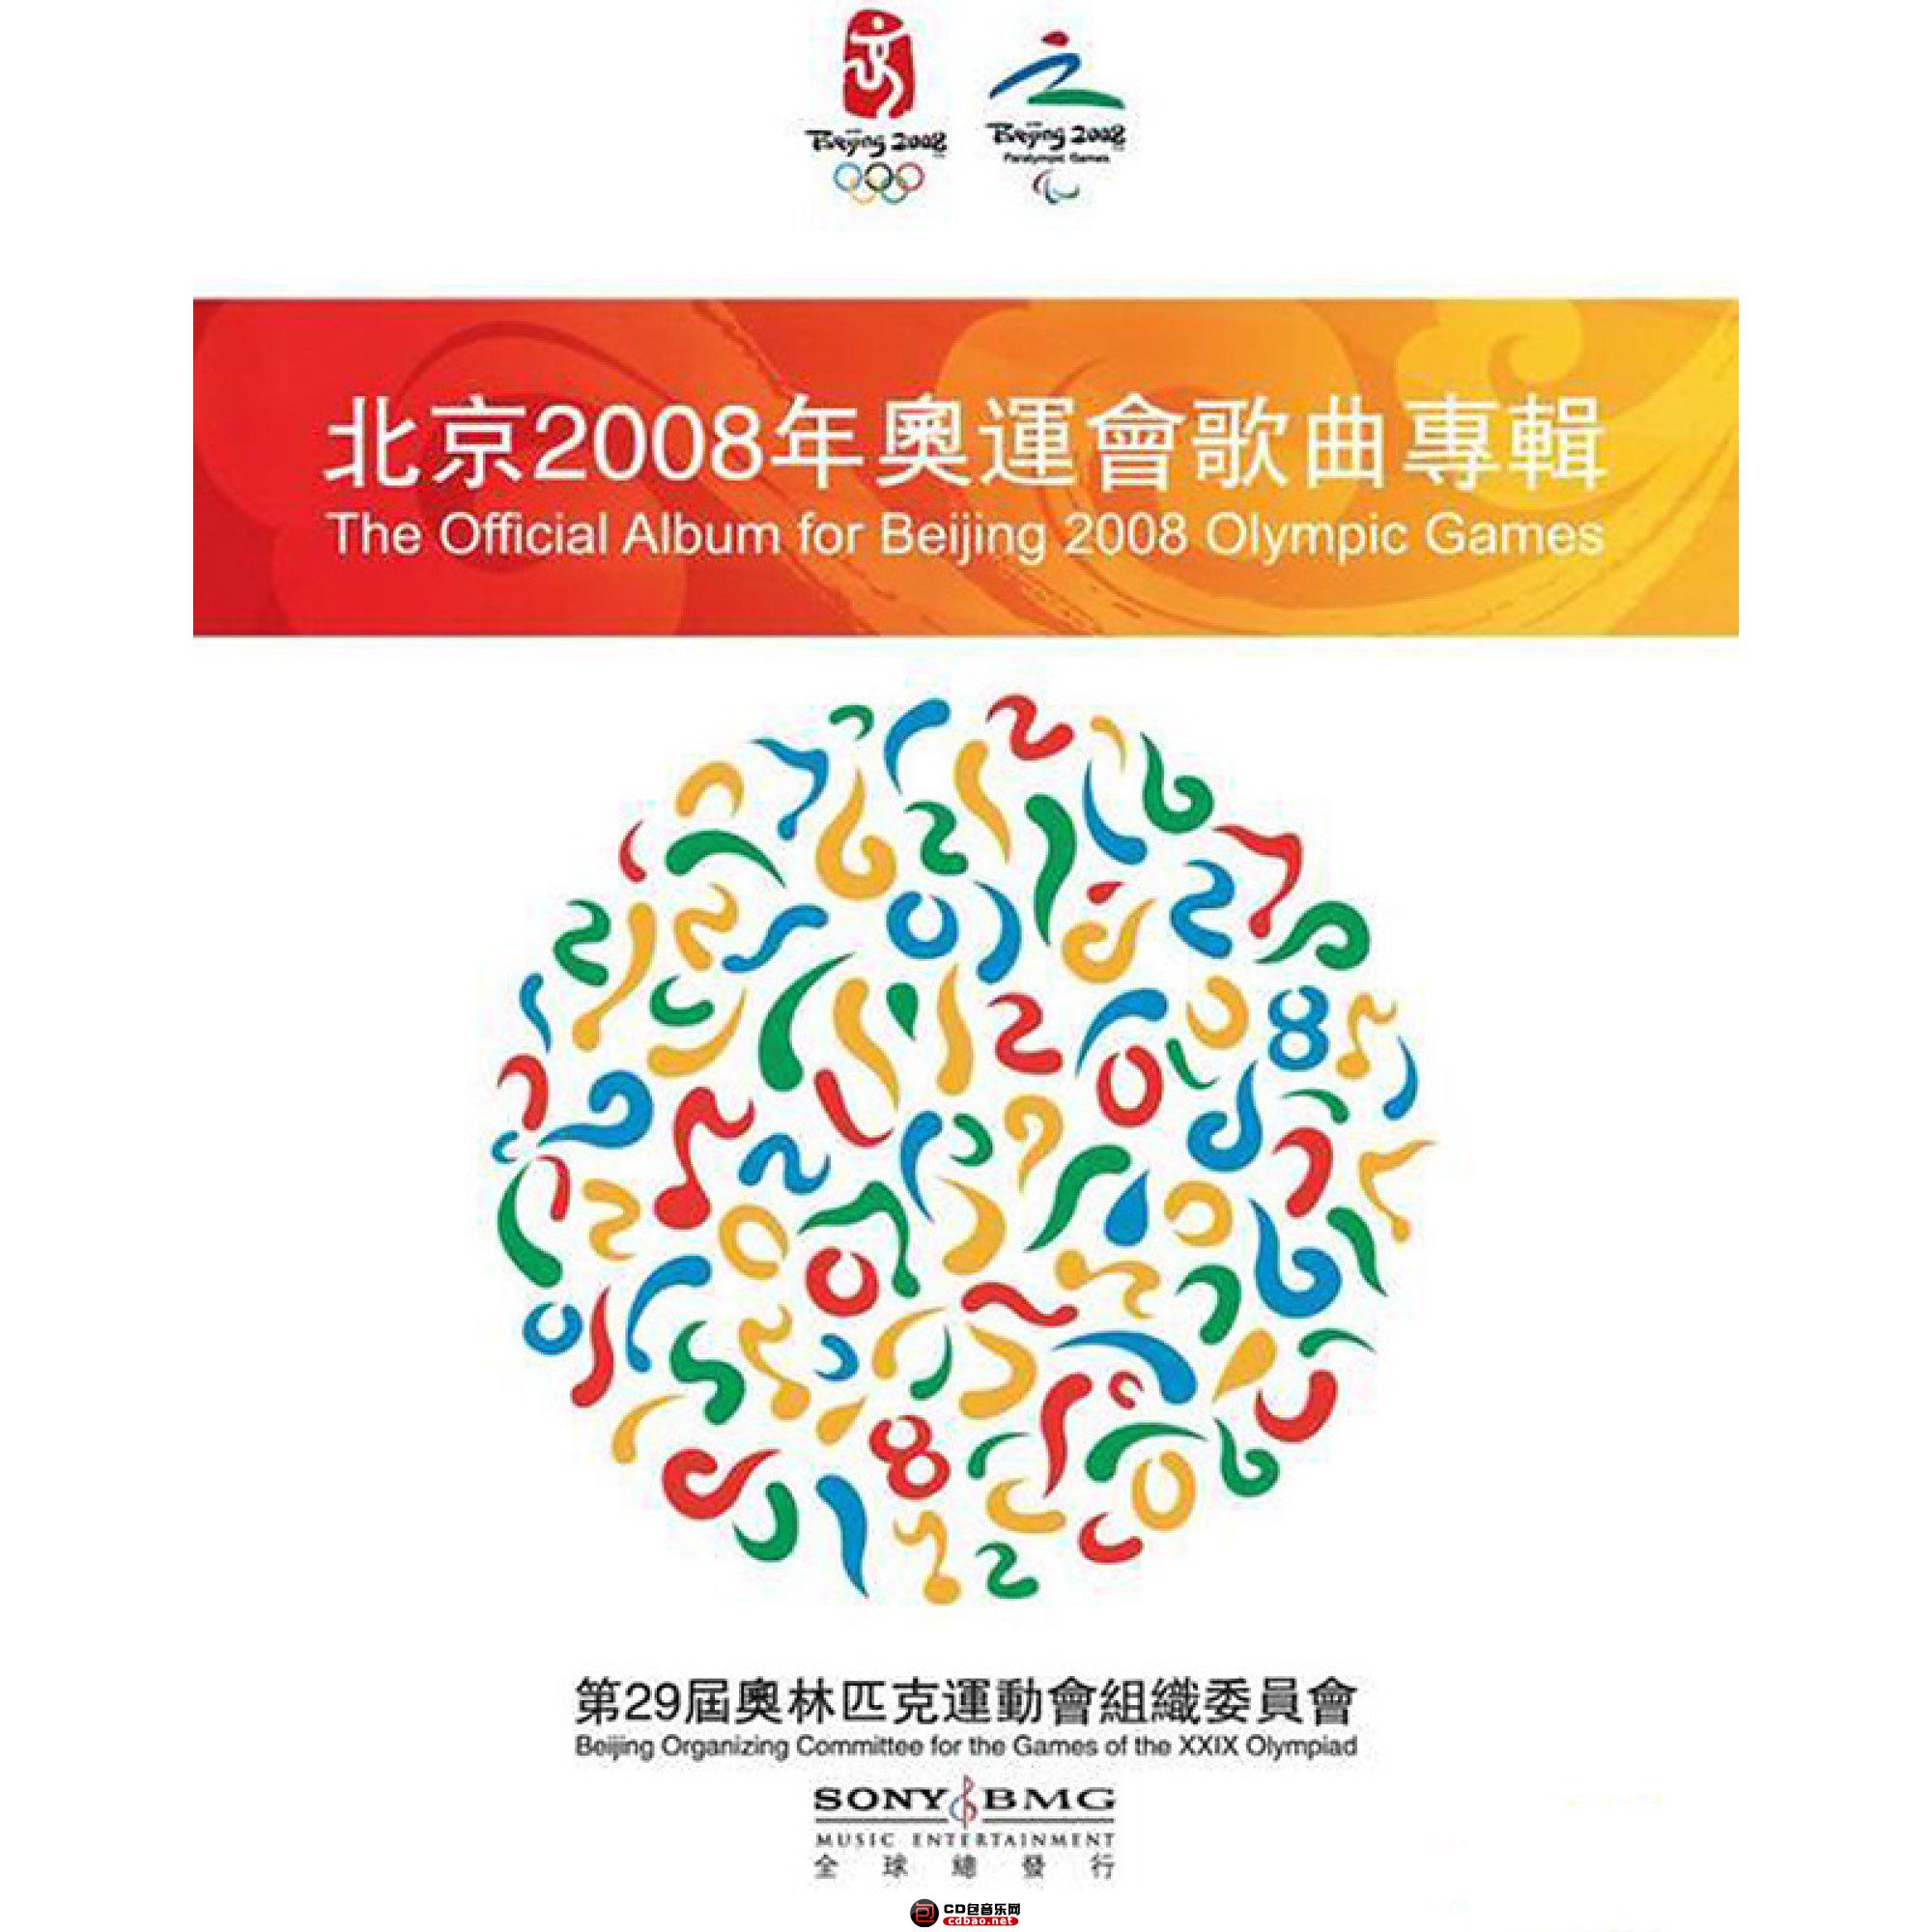 2008-04《北京2008年奥运会歌曲专辑》.jpg